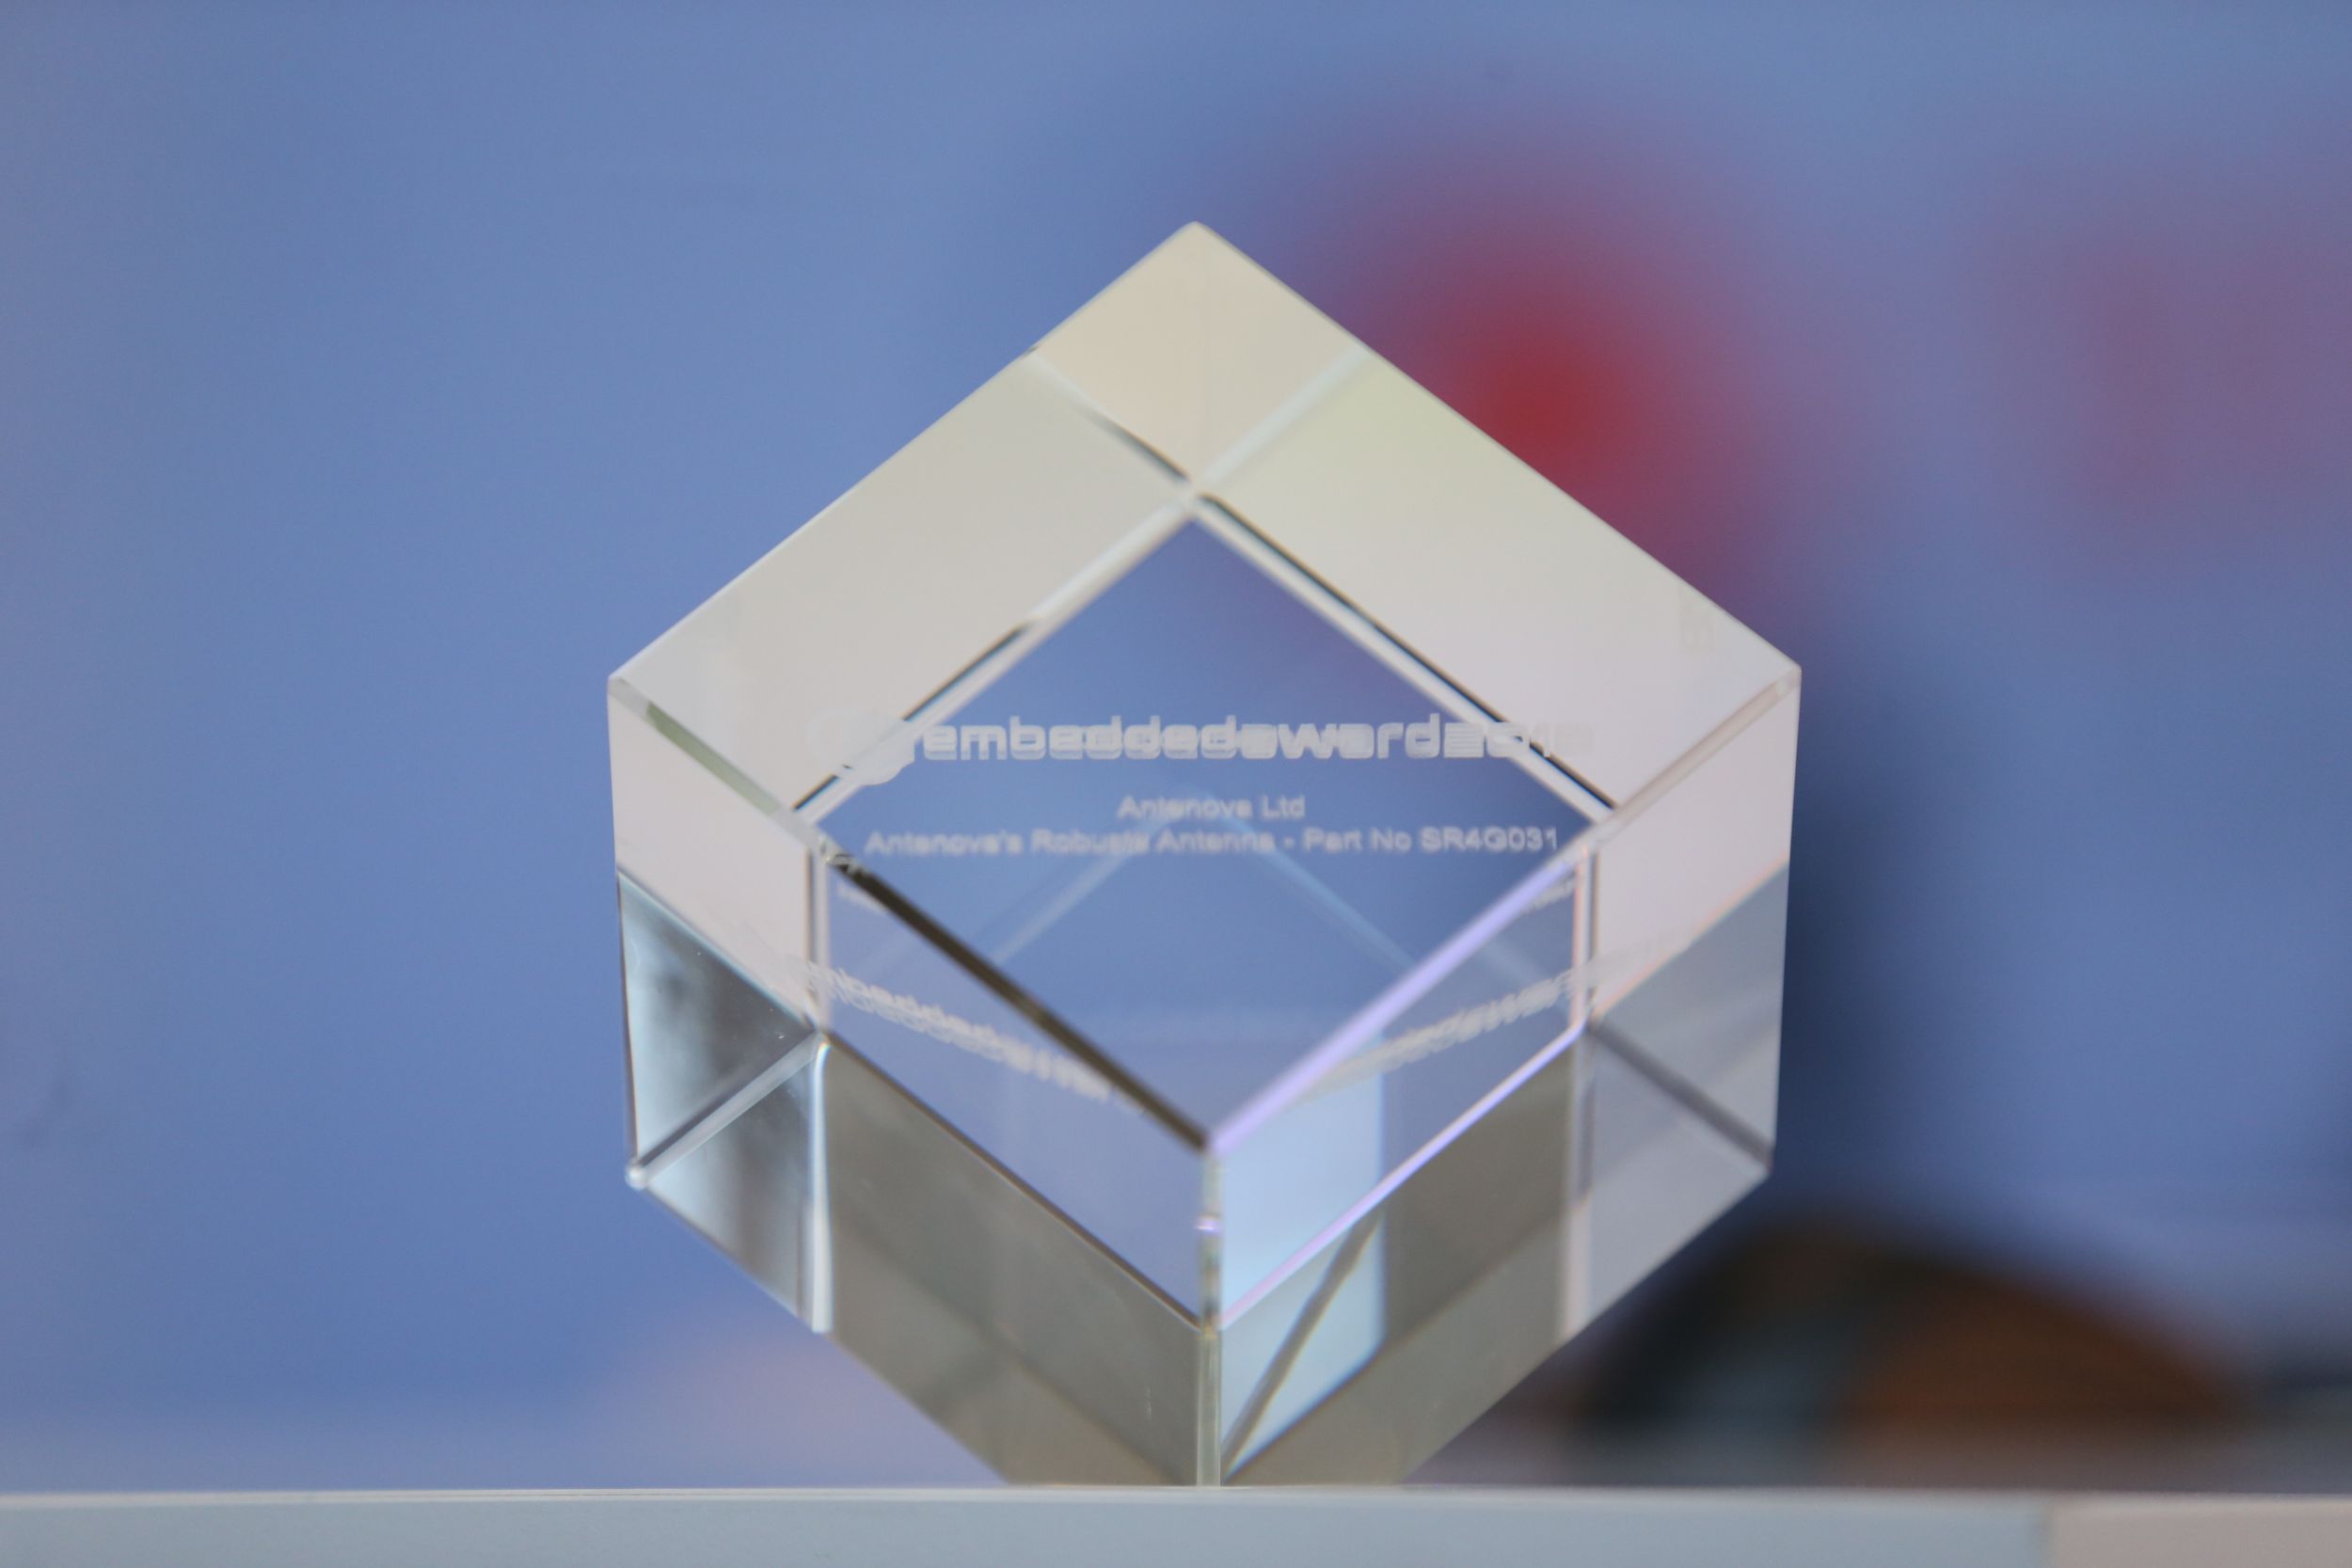 Award Winner 2018 (Bild: Nürnberg Messe GmbH)